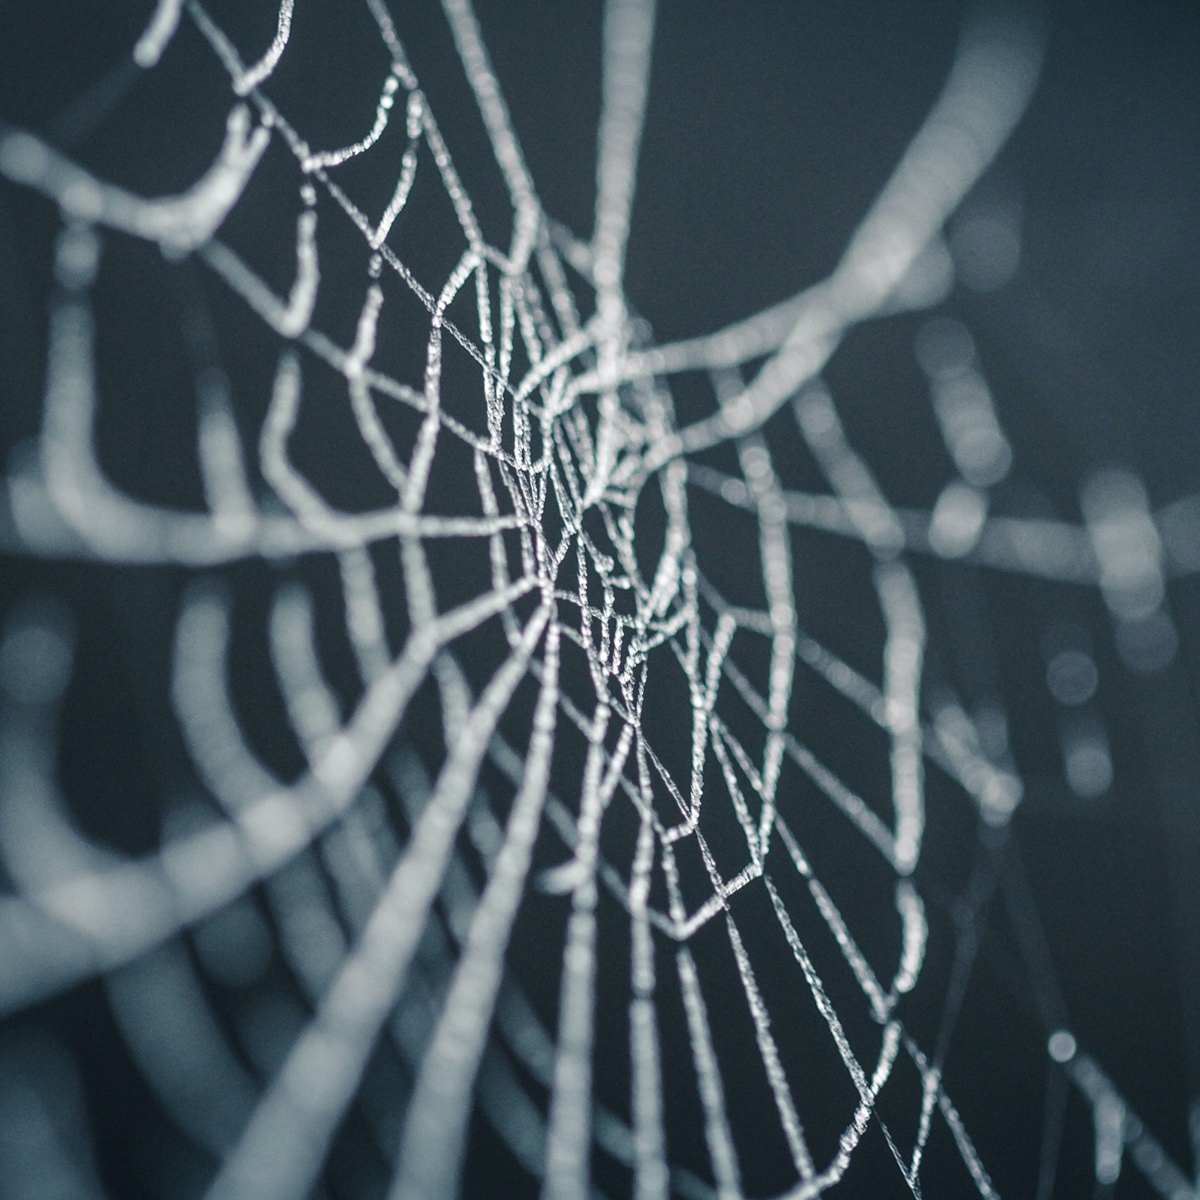 Spider web on a dark background